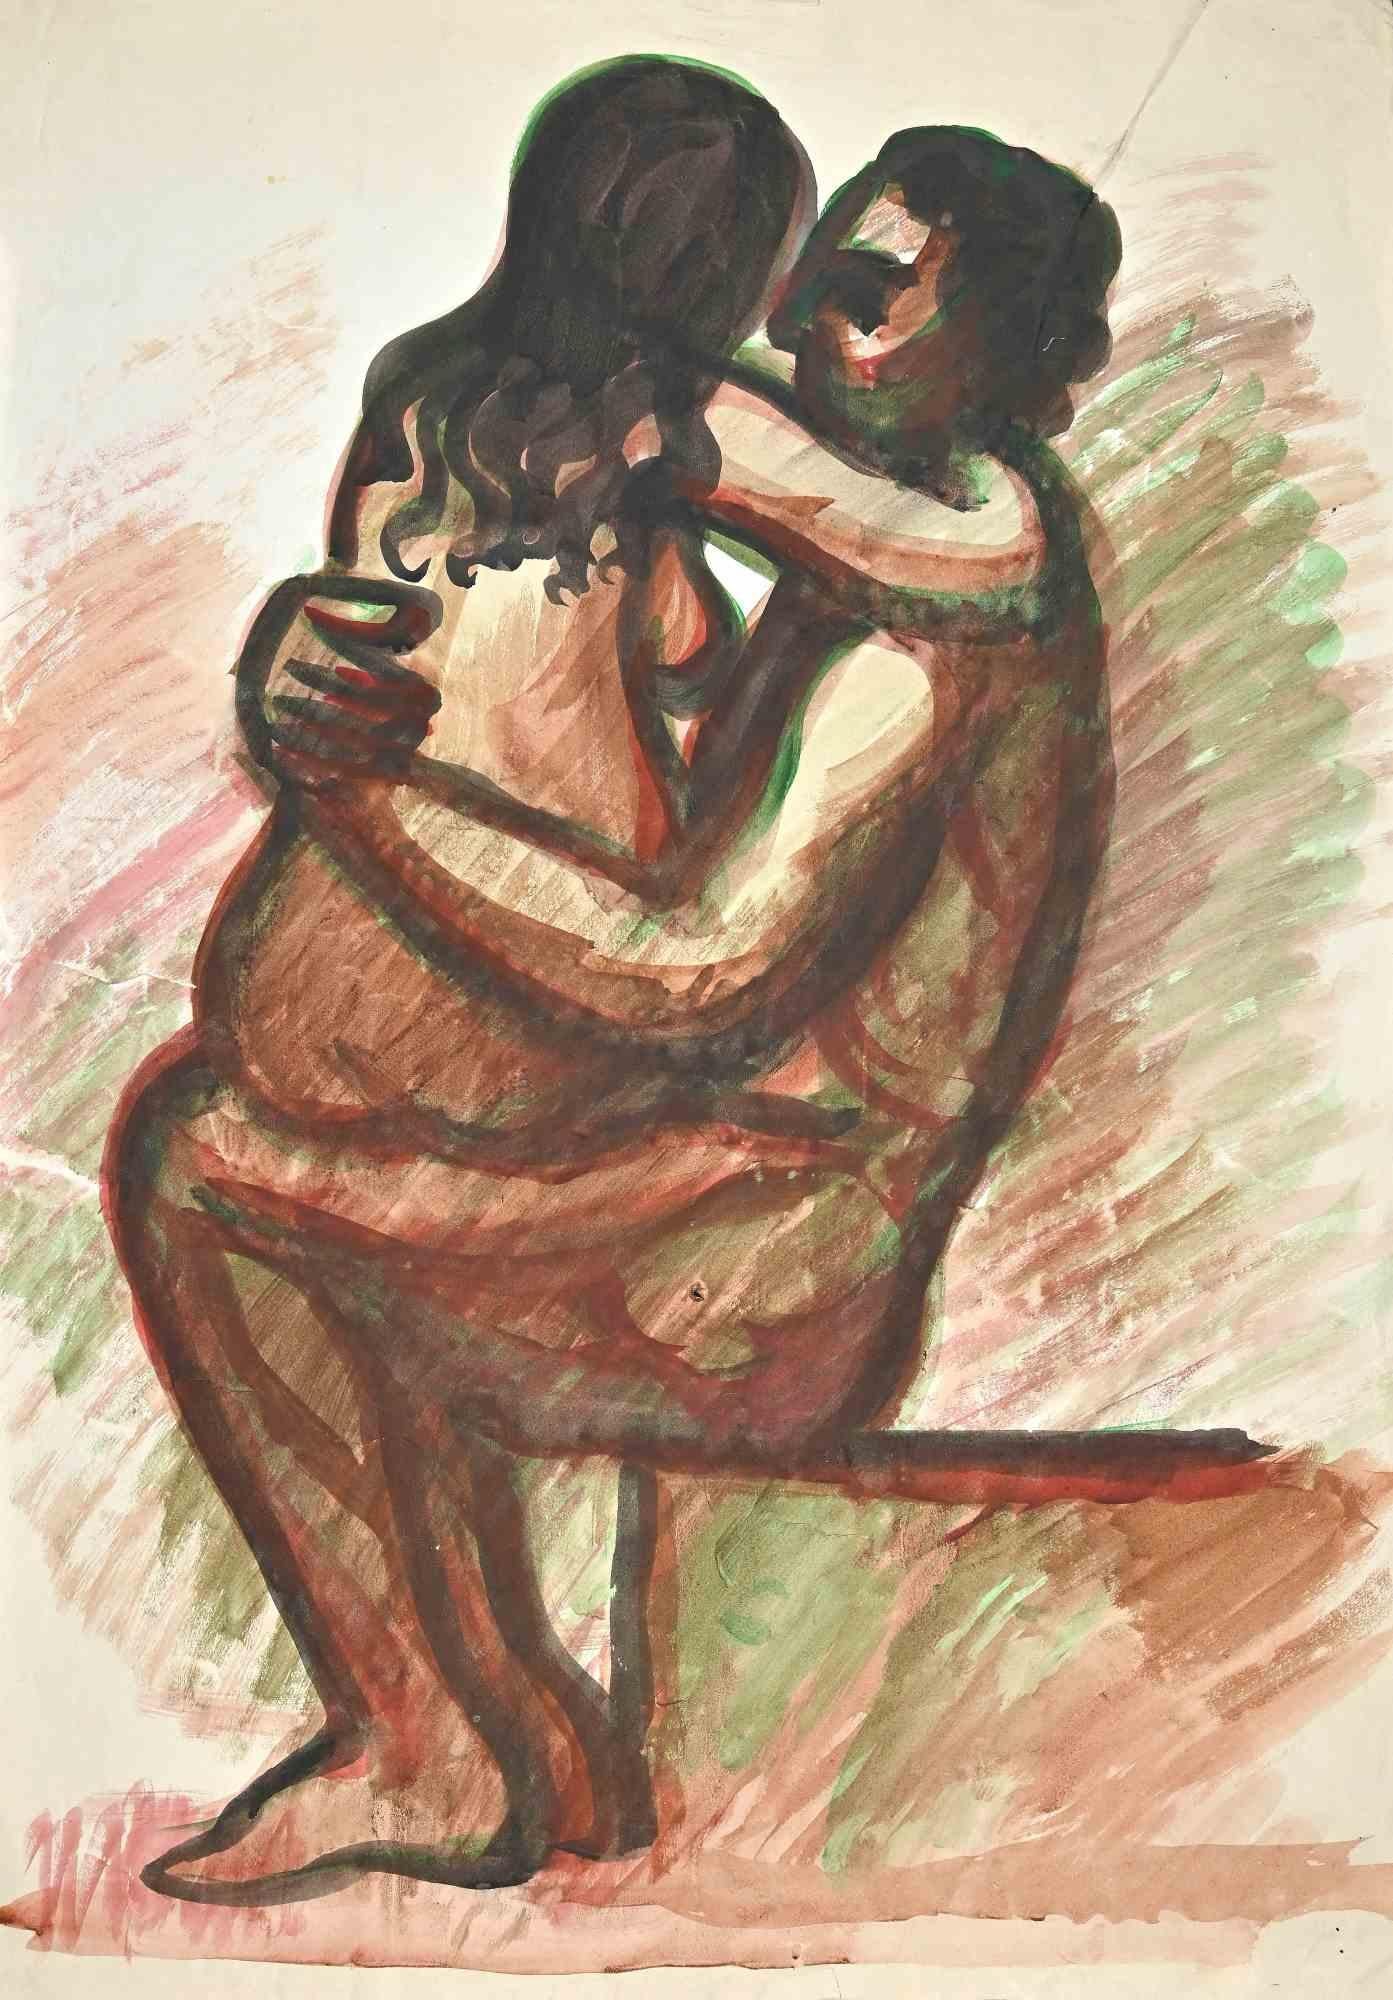 Liebe ist eine Aquarellzeichnung, die Mitte des 20. Jahrhunderts von Jean Delpech (1916-1988) angefertigt wurde. 

Guter Zustand bis auf Falten und Schnitte.

Das Kunstwerk ist in geschickten Strichen und harmonischen Farben durch Meisterschaft